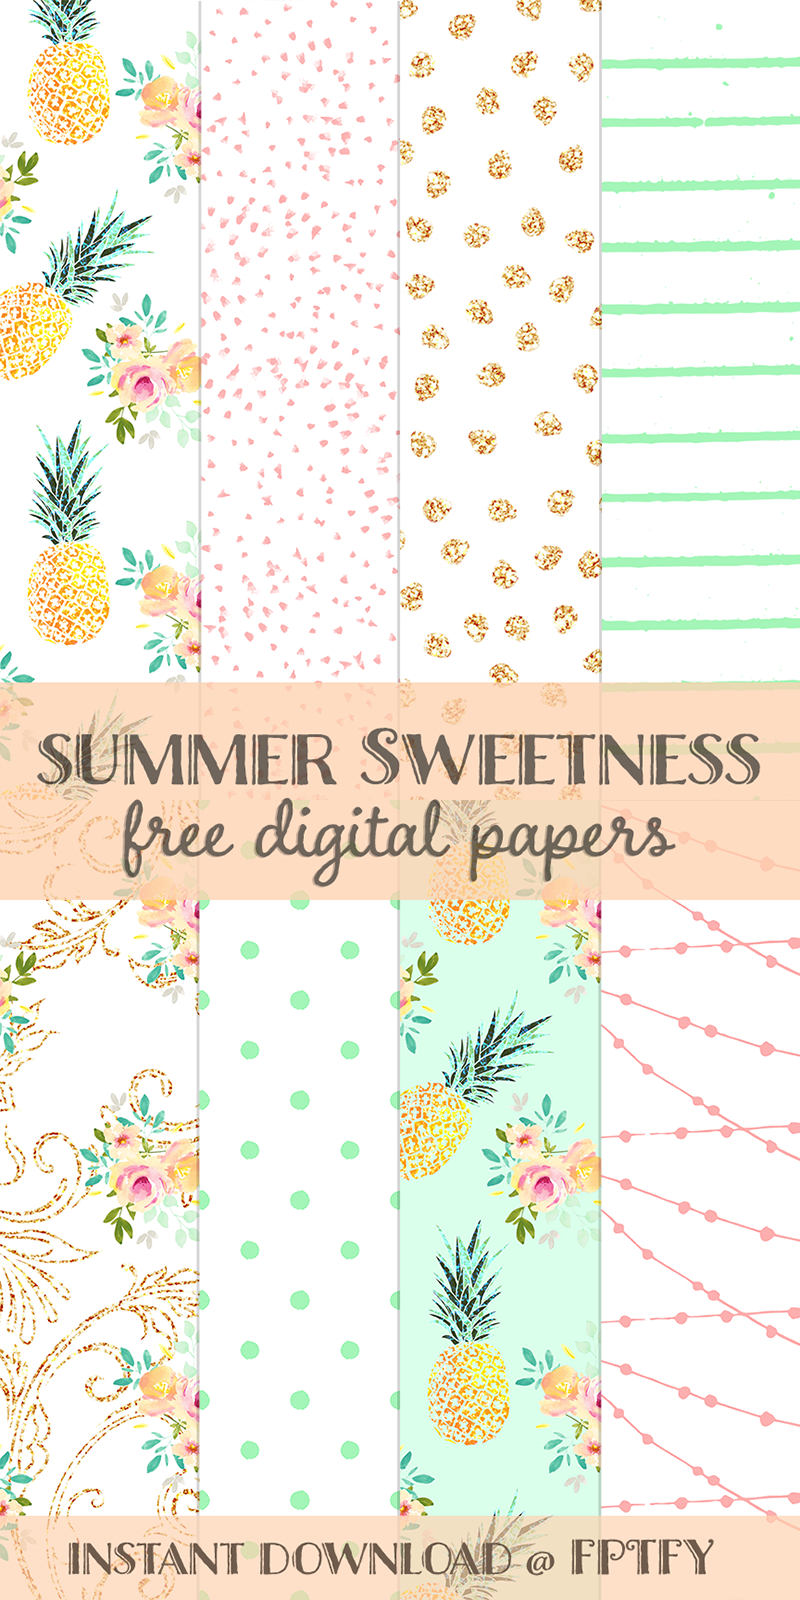 Free Summer Sweetness Digital Paper | Best Free Digital Goods - Free Online Digital Scrapbooking Printable